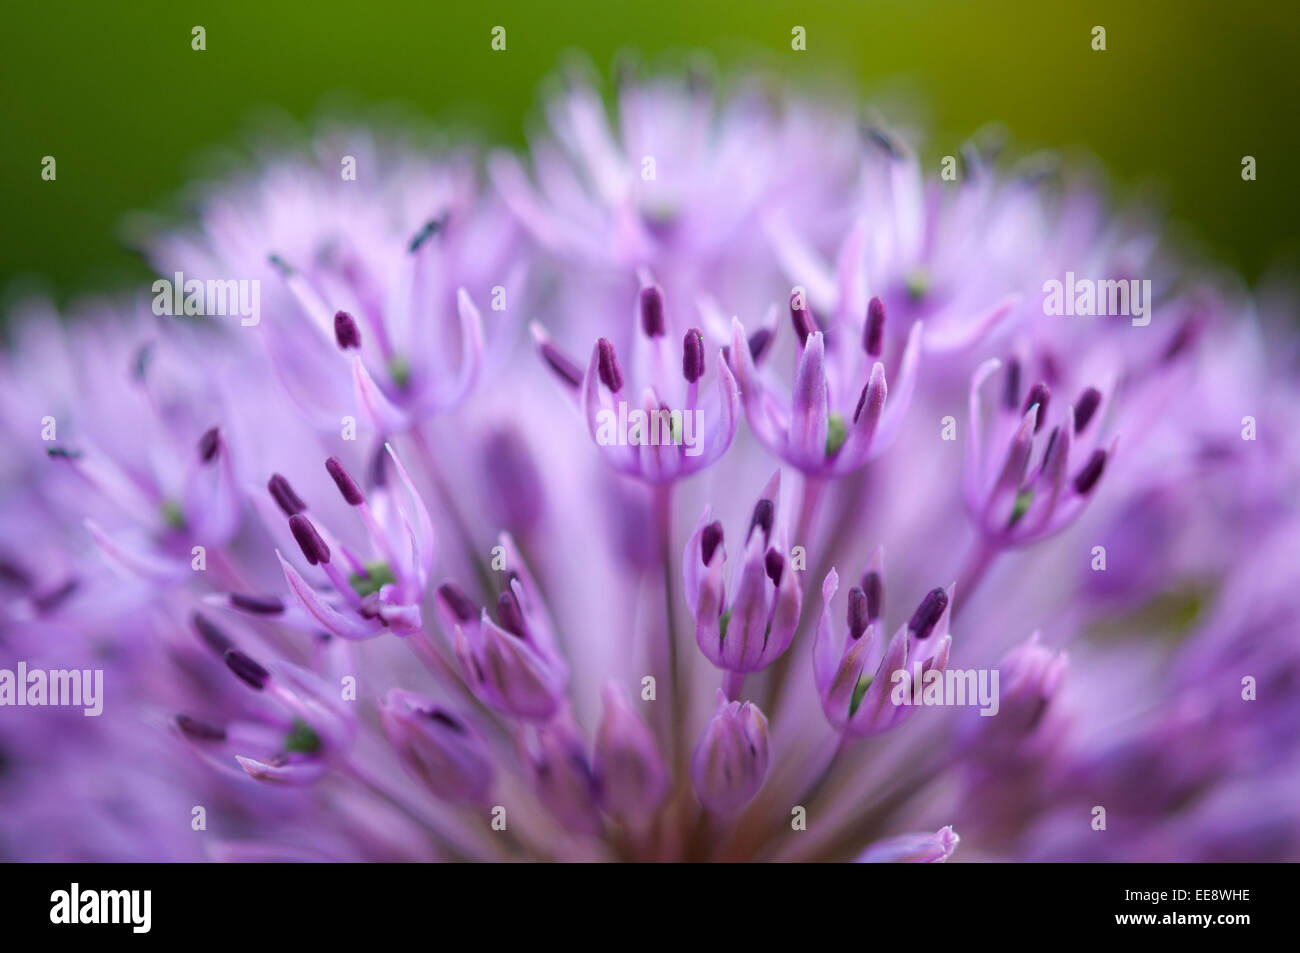 Allium violet fleur en gros plan avec une faible profondeur de champ en donnant des couleurs douces. Banque D'Images